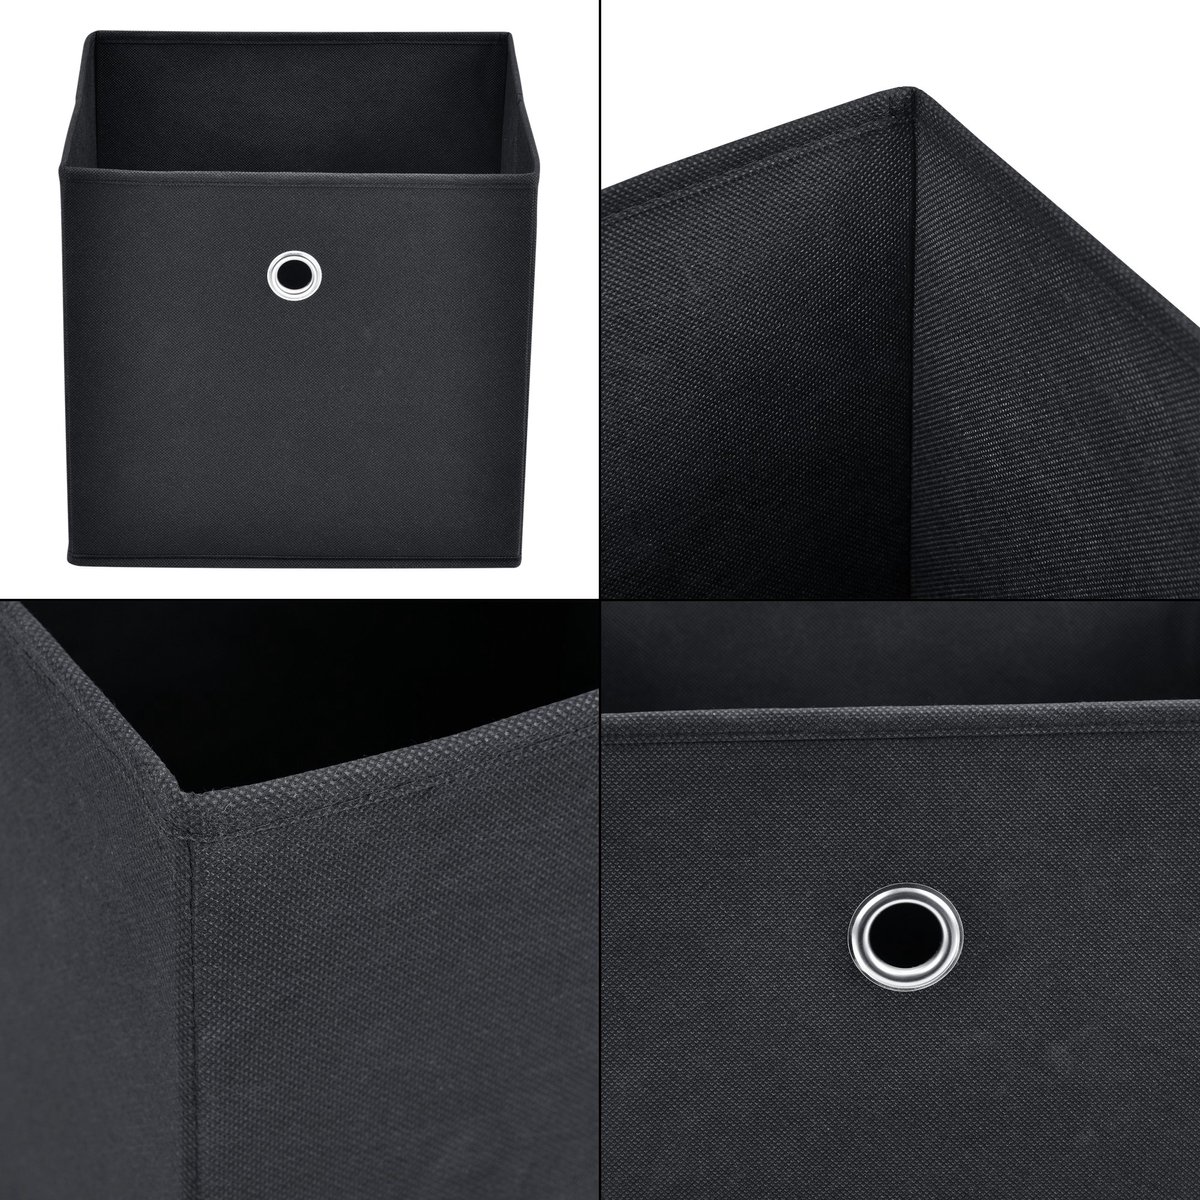 Opbergmanden Ivelisse - 28x30x30 cm - Opvouwbaar - Set van 10 - Zwart - Modern Design